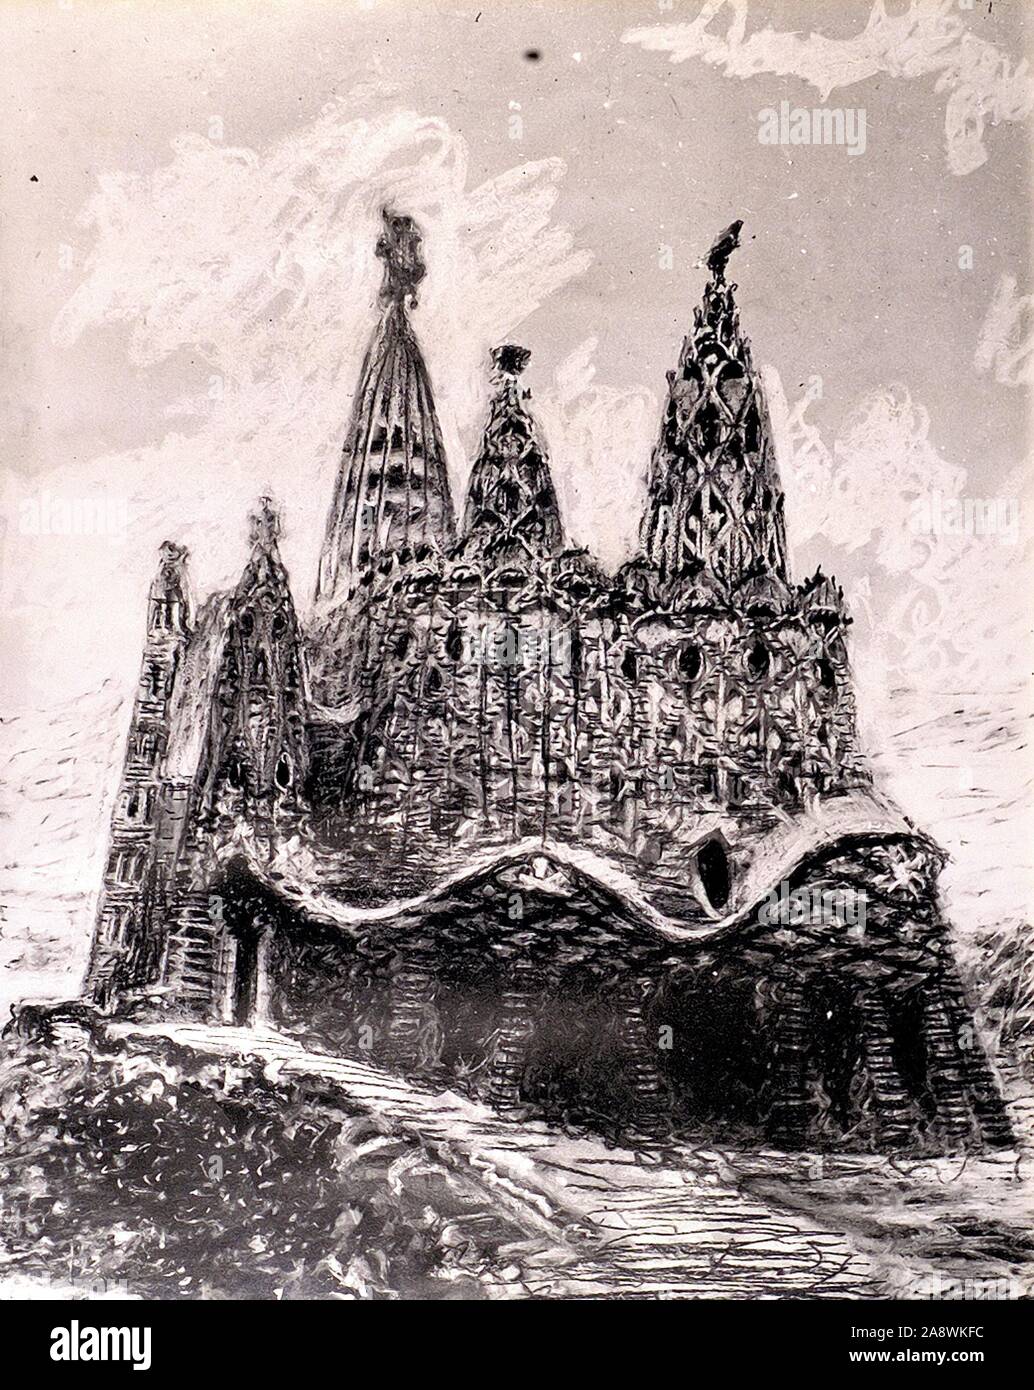 Design Process - Antoni Gaudí